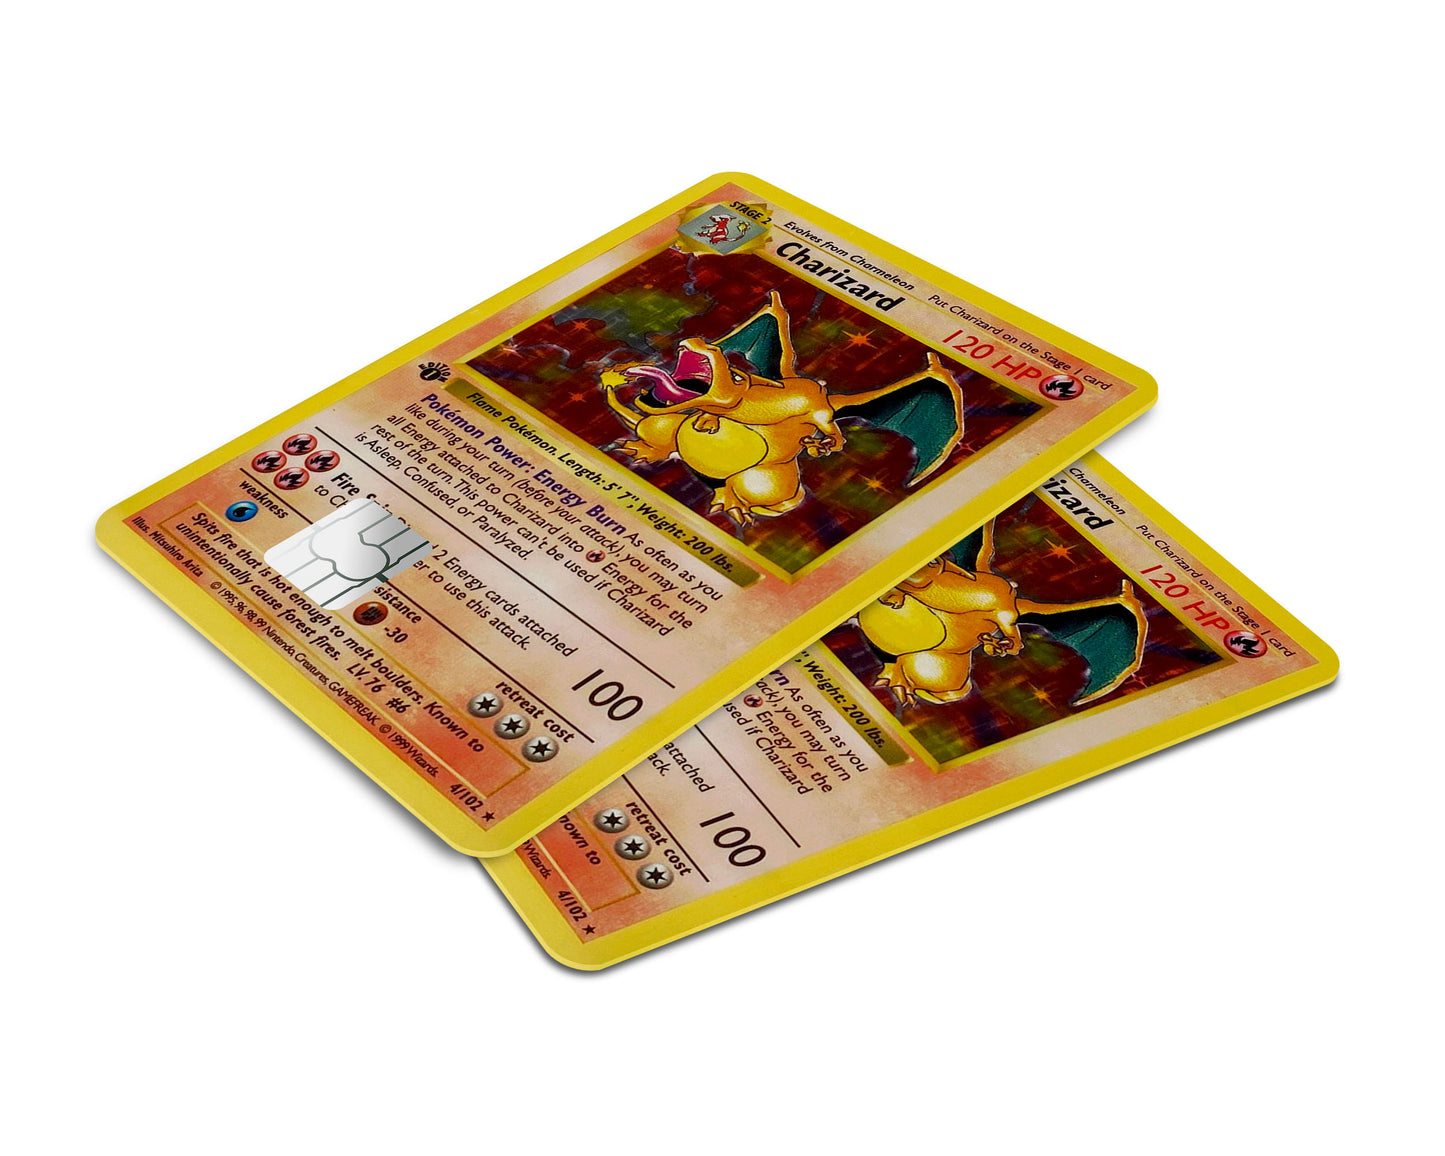 Charizard Pokemon Card Credit Card Skin